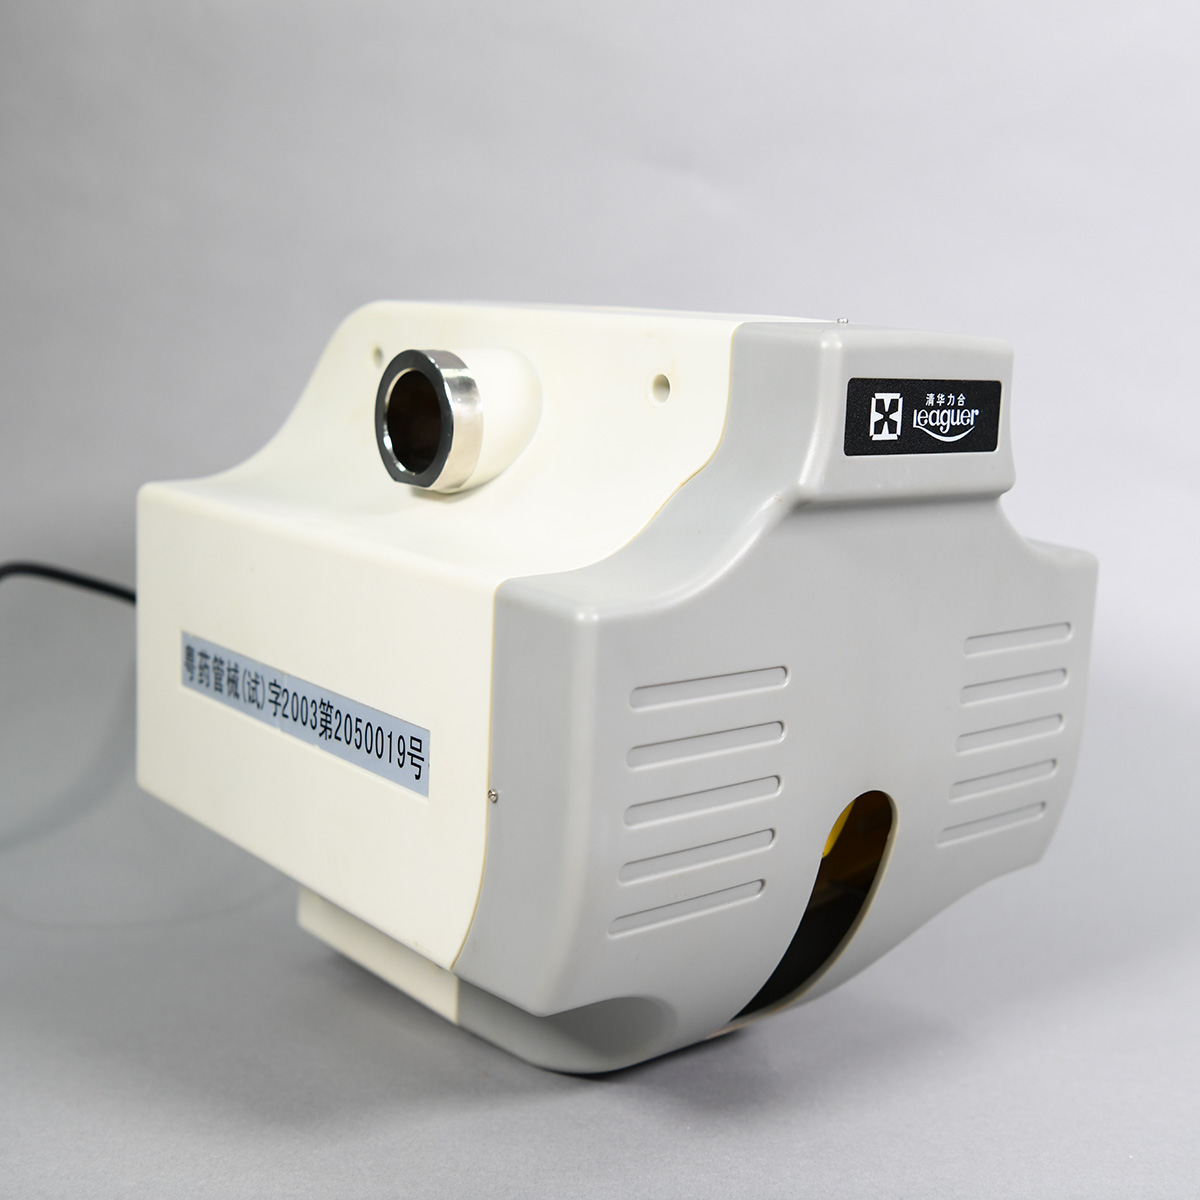 悬挂式扫描红外人体表面温度快速筛检仪（部分），2003年生产